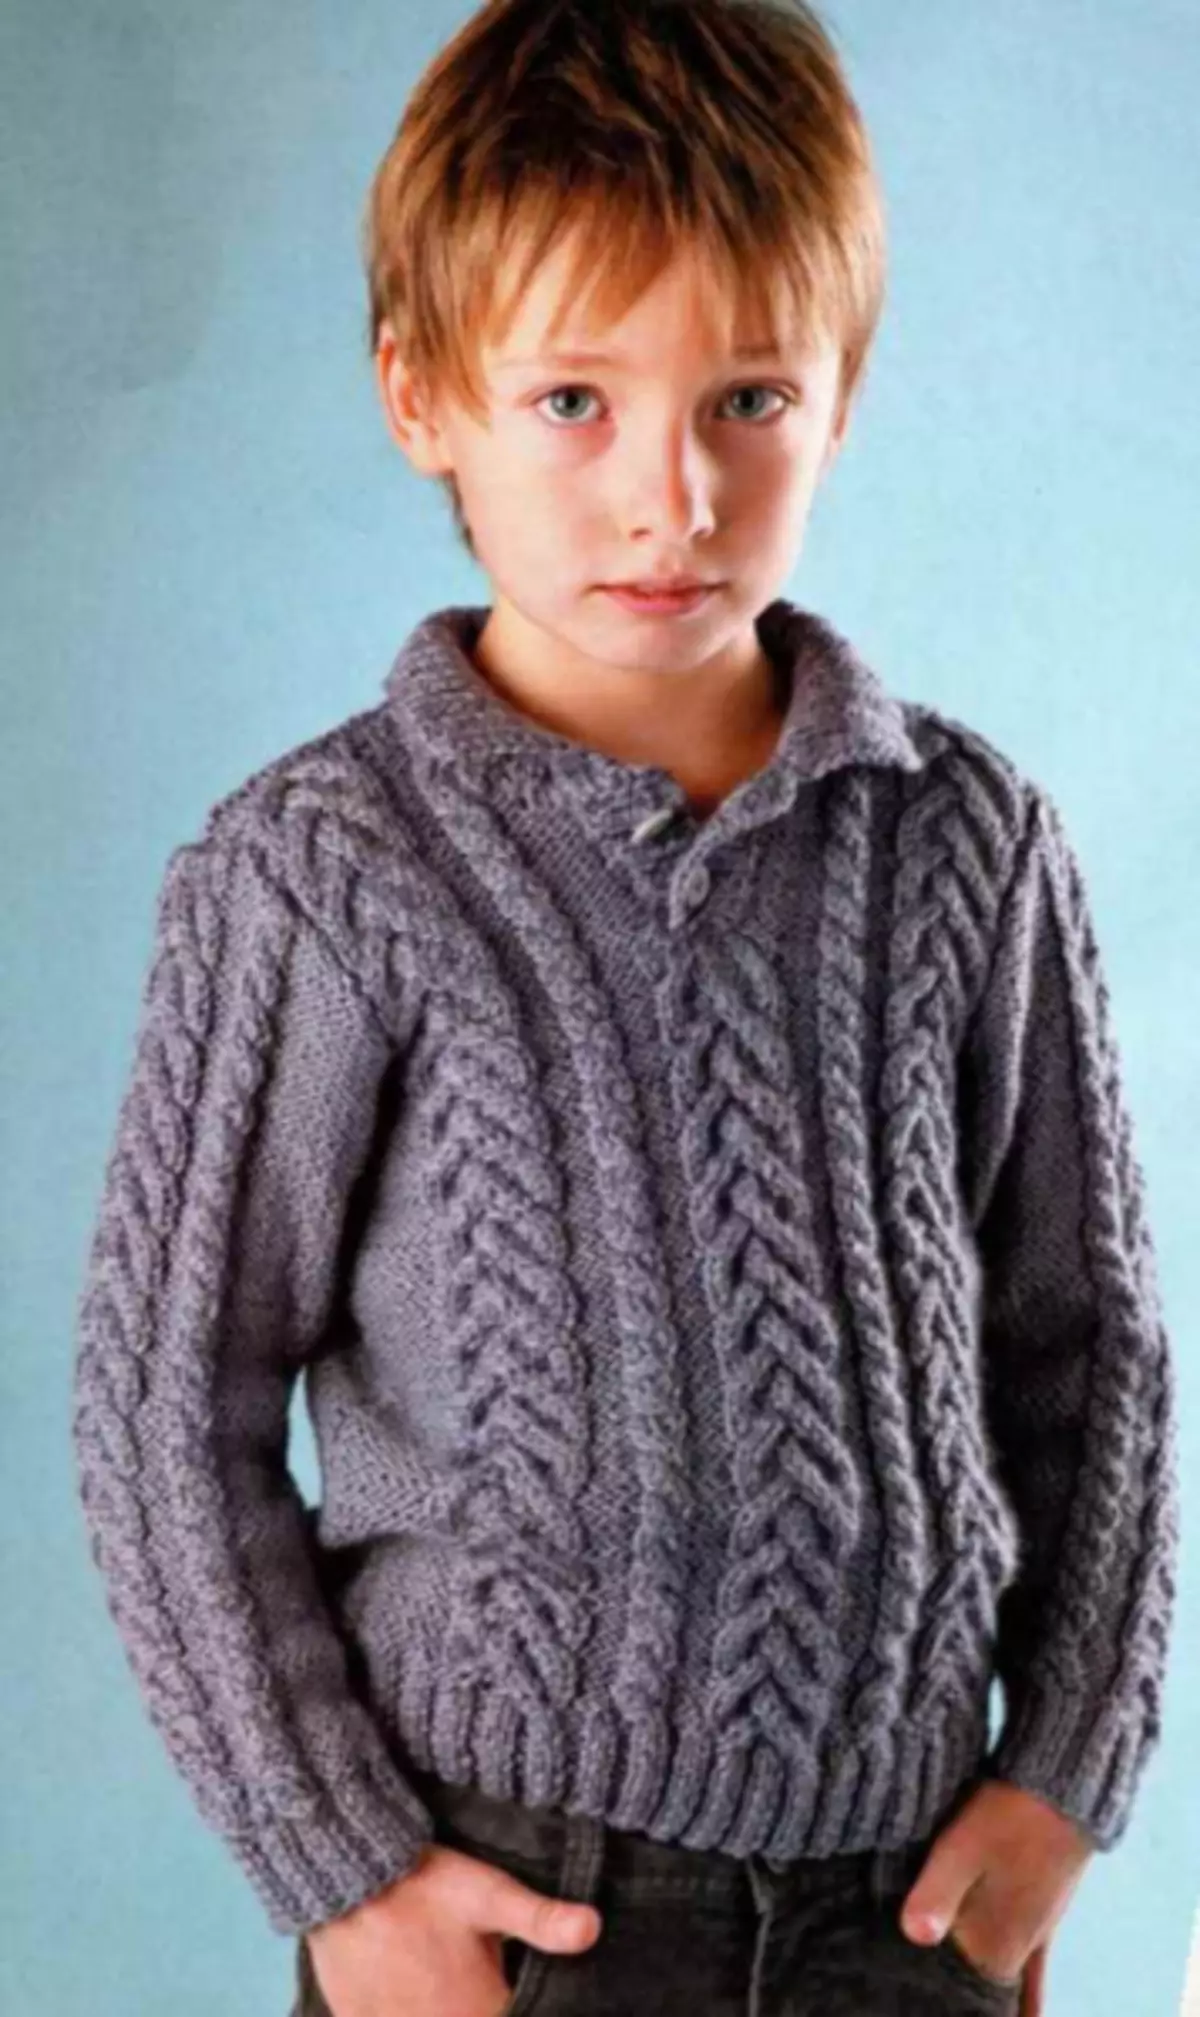 Џемпер за дечака са иглима плетења: Рела за бебу 1-3 године са фотографијама и видео записима